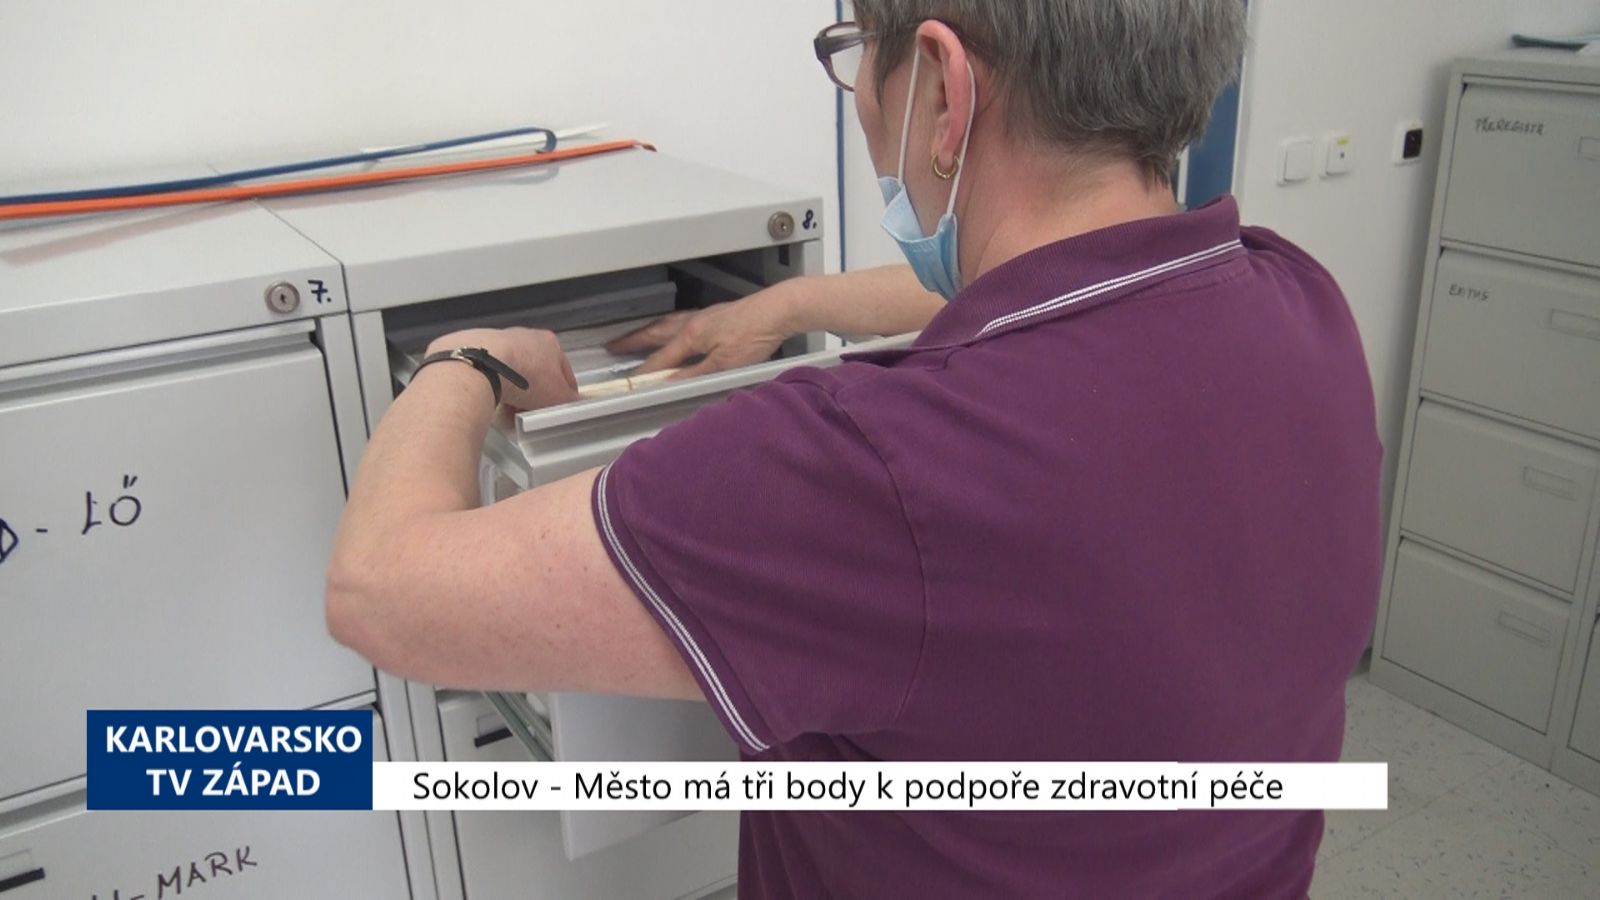 Sokolov: Město má tři body k podpoře lékařské péče (TV Západ)